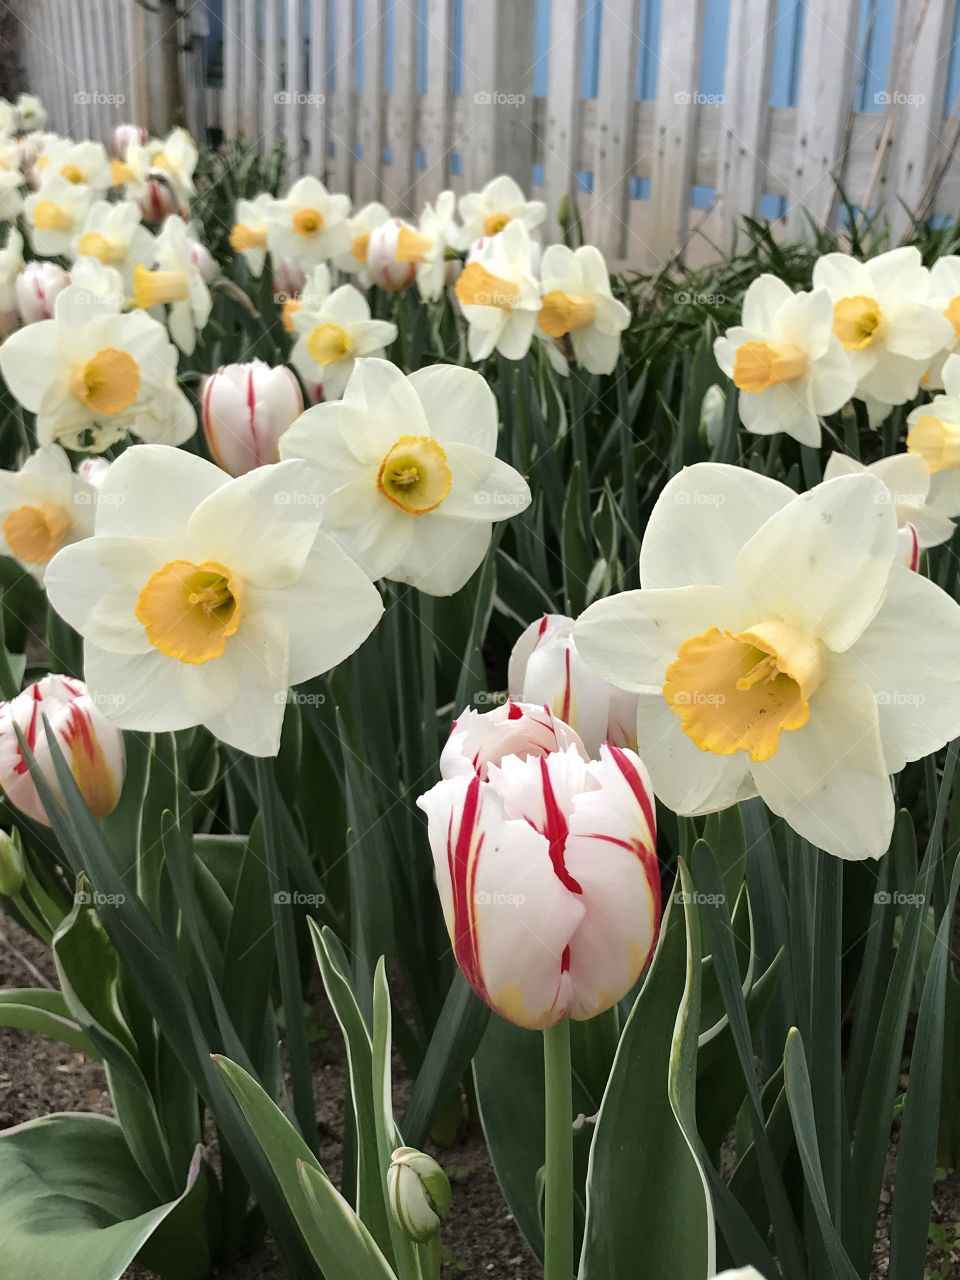 Daffodils and tulips in Michigan 